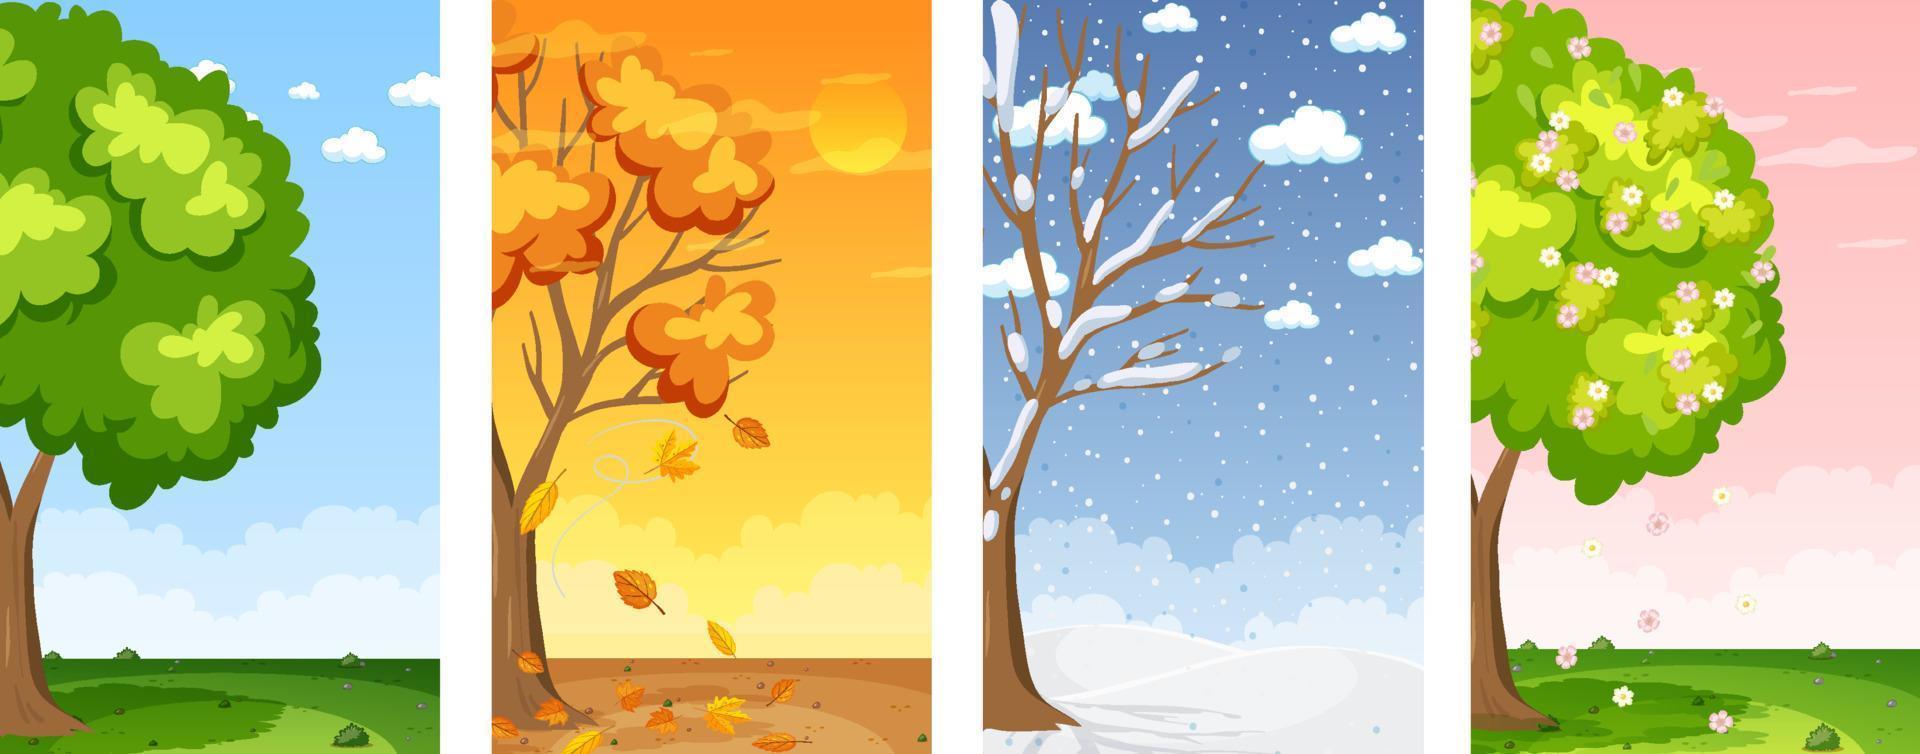 Bốn mùa: Sự thay đổi của mùa với tất cả những điều tuyệt vời mà nó mang lại cho chúng ta, từ những ngày ấm áp của mùa xuân đến những cảm giác mát mẻ của mùa đông. Những cảnh sắc vàng óng, đỏ rực của mùa thu vàng làm cho chúng ta đắm mình trong cảm giác thư giãn. Hãy cùng xem hình ảnh để ghi lại những khoảnh khắc tuyệt vời của bốn mùa trong năm.